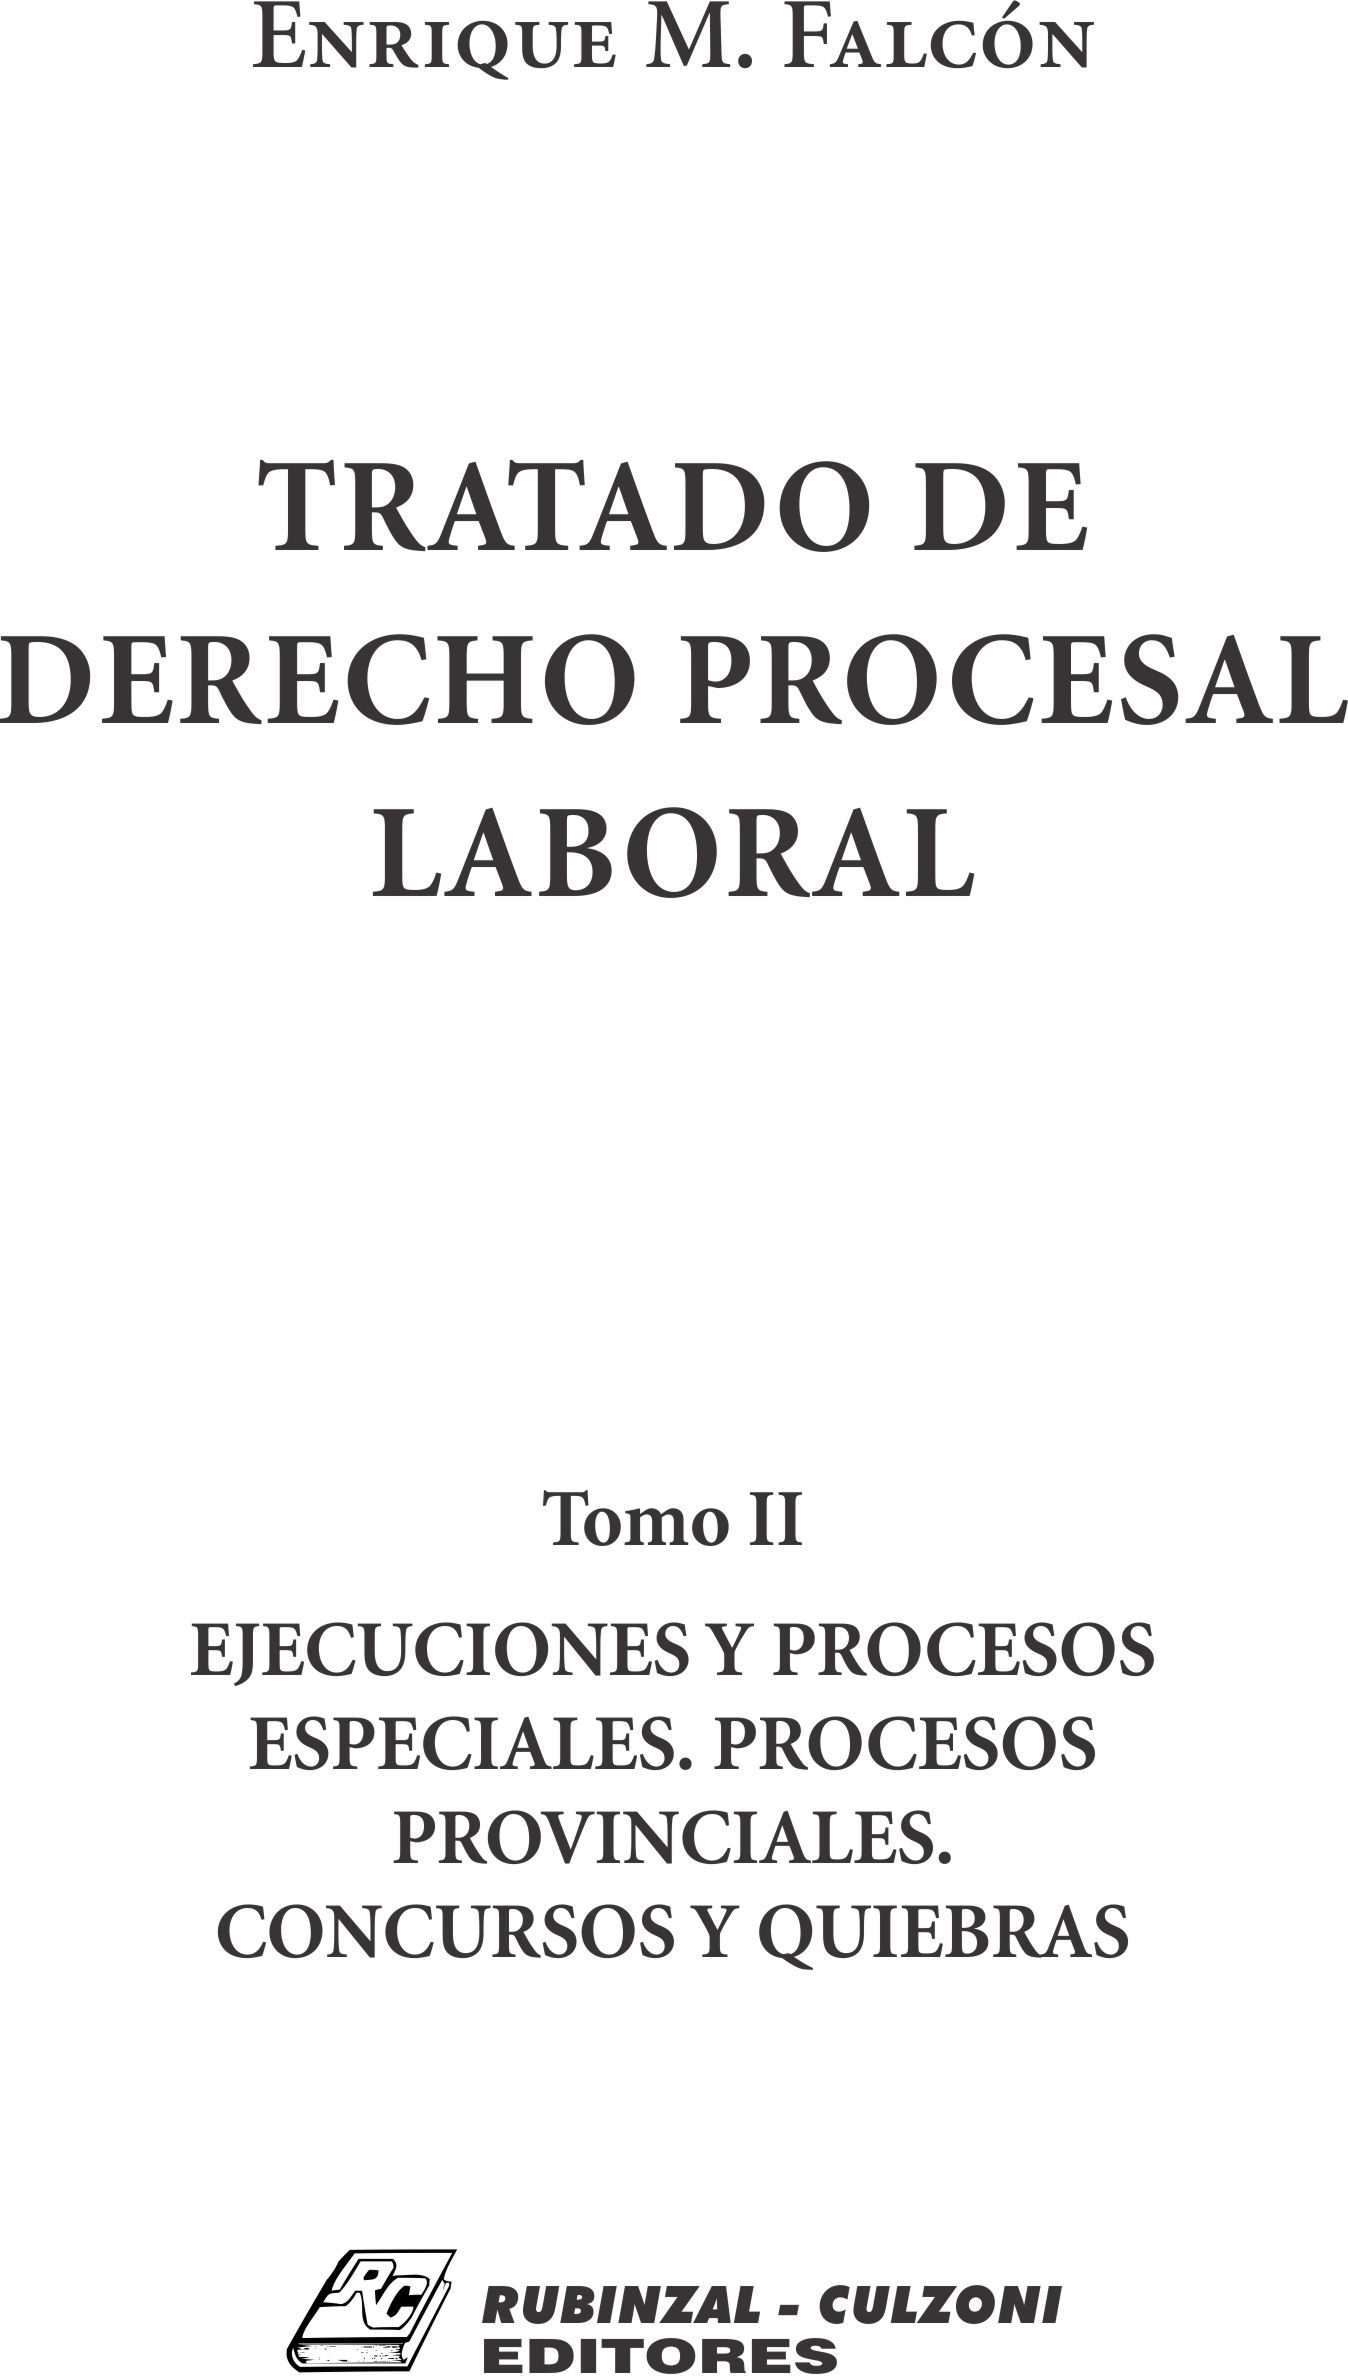 Tratado de Derecho Procesal Laboral. - Tomo II. Ejecuciones y procesos especiales. Procesos provinciales. Concursos y quiebras.